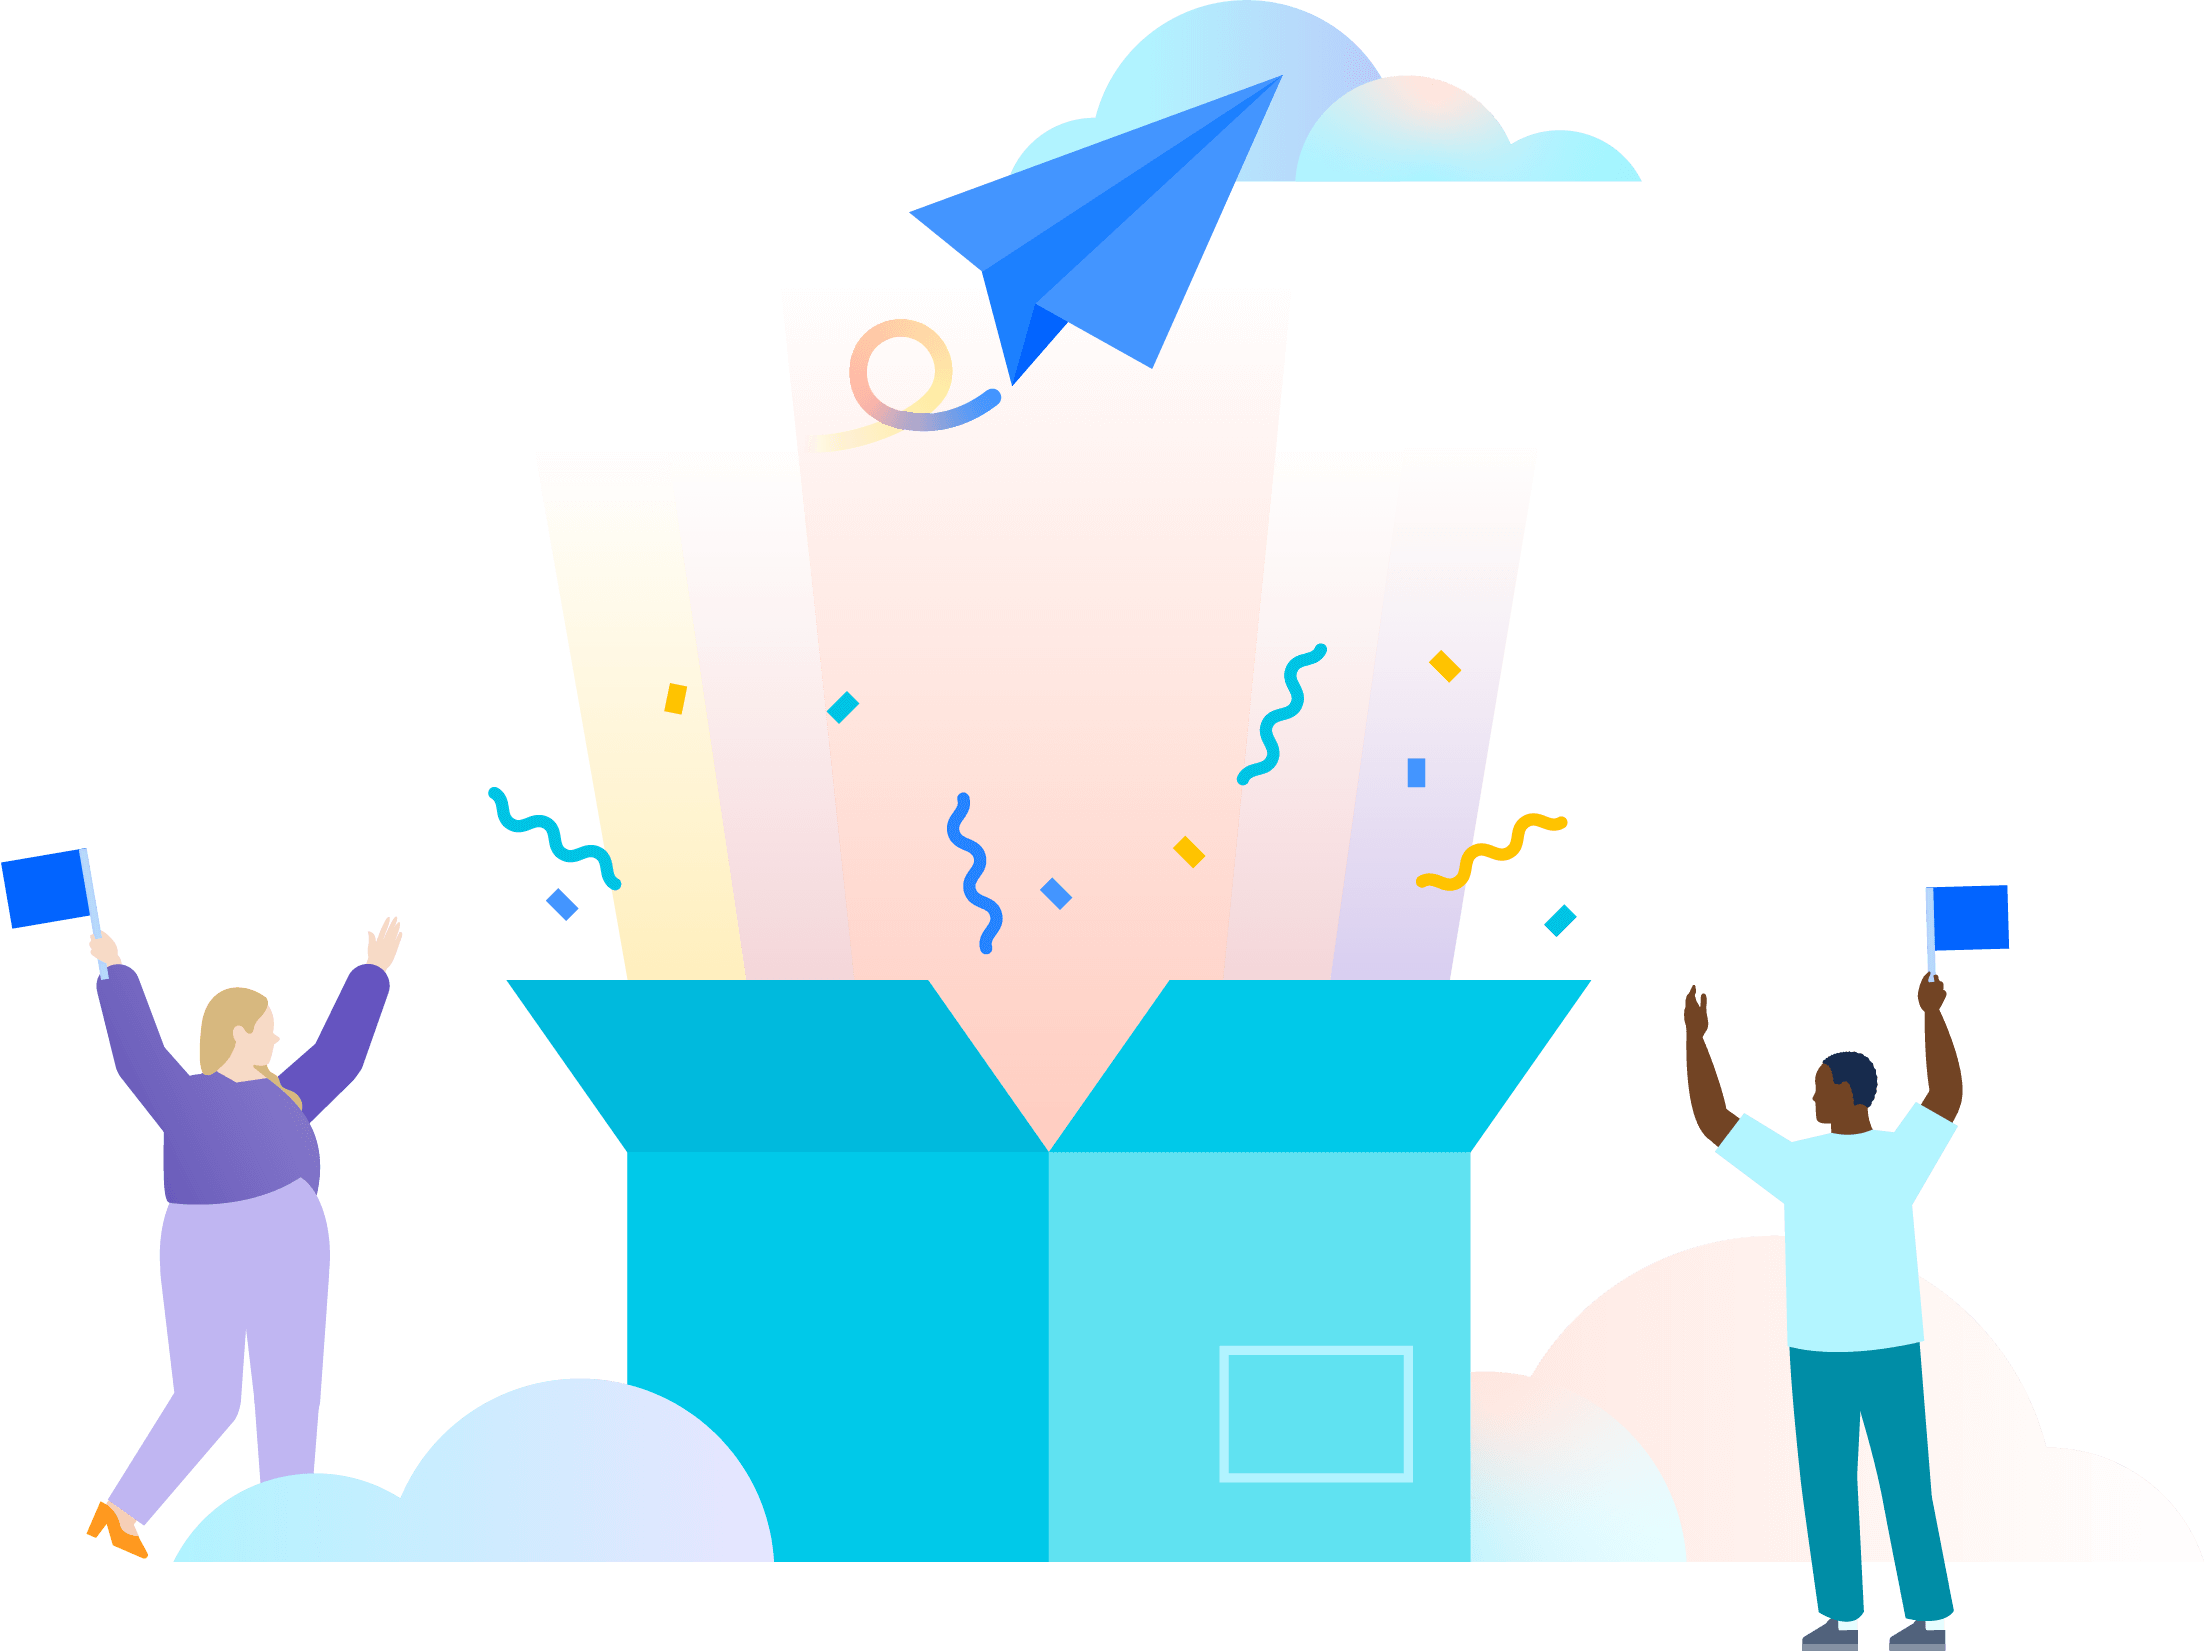 Ilustração de duas pessoas comemorando a abertura de uma grande caixa azul-petróleo que revela raios de luz multicoloridos, confetes e um avião de papel azul indo em direção às nuvens.